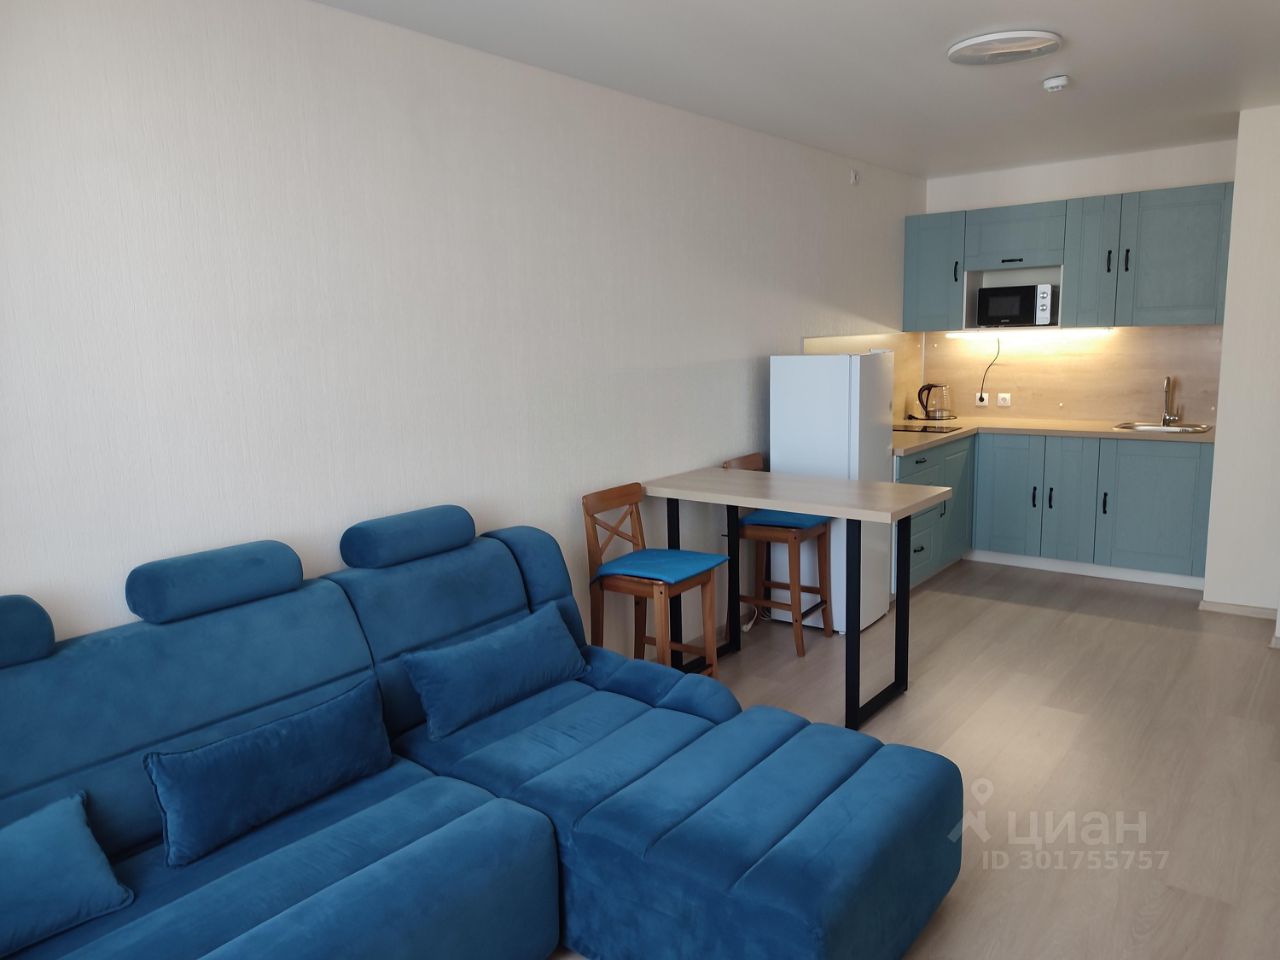 Современная квартира в Екатеринбурге, 40 кв.м, 16 этаж, просторная кухня 18 кв.м, уютная гостиная 14 кв.м, светлая и стильная.